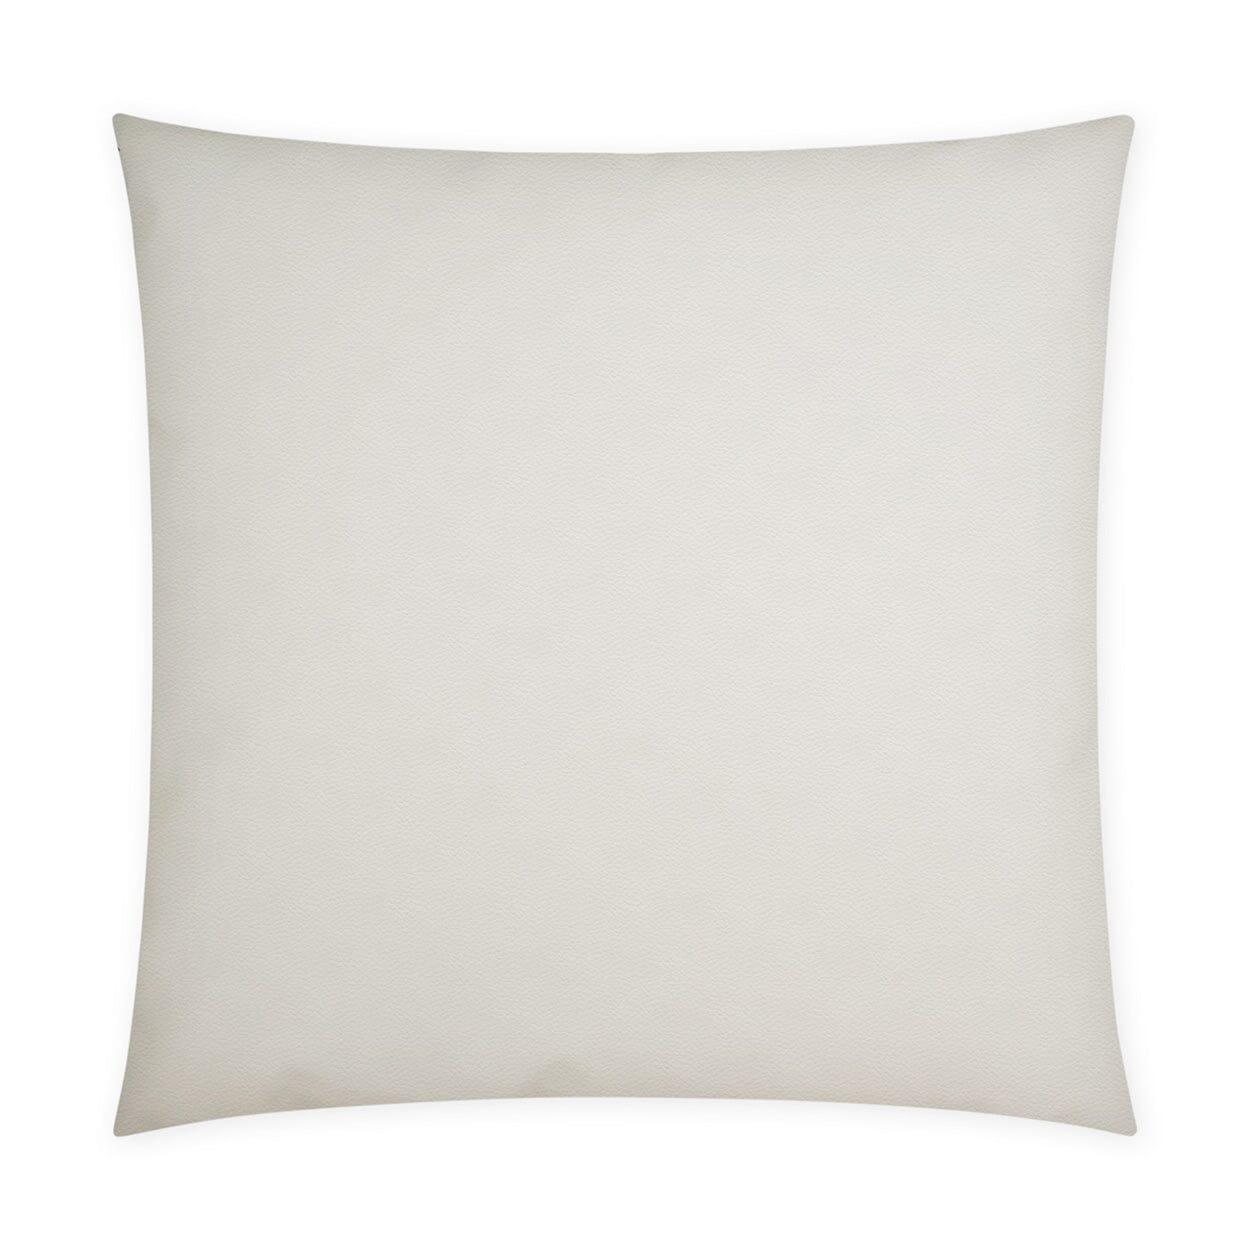 D.V. Kap 12" x 24" Outdoor Lumbar Pillow | Sundance Band Leaf Lumbar Pillows D.V Kap Outdoor